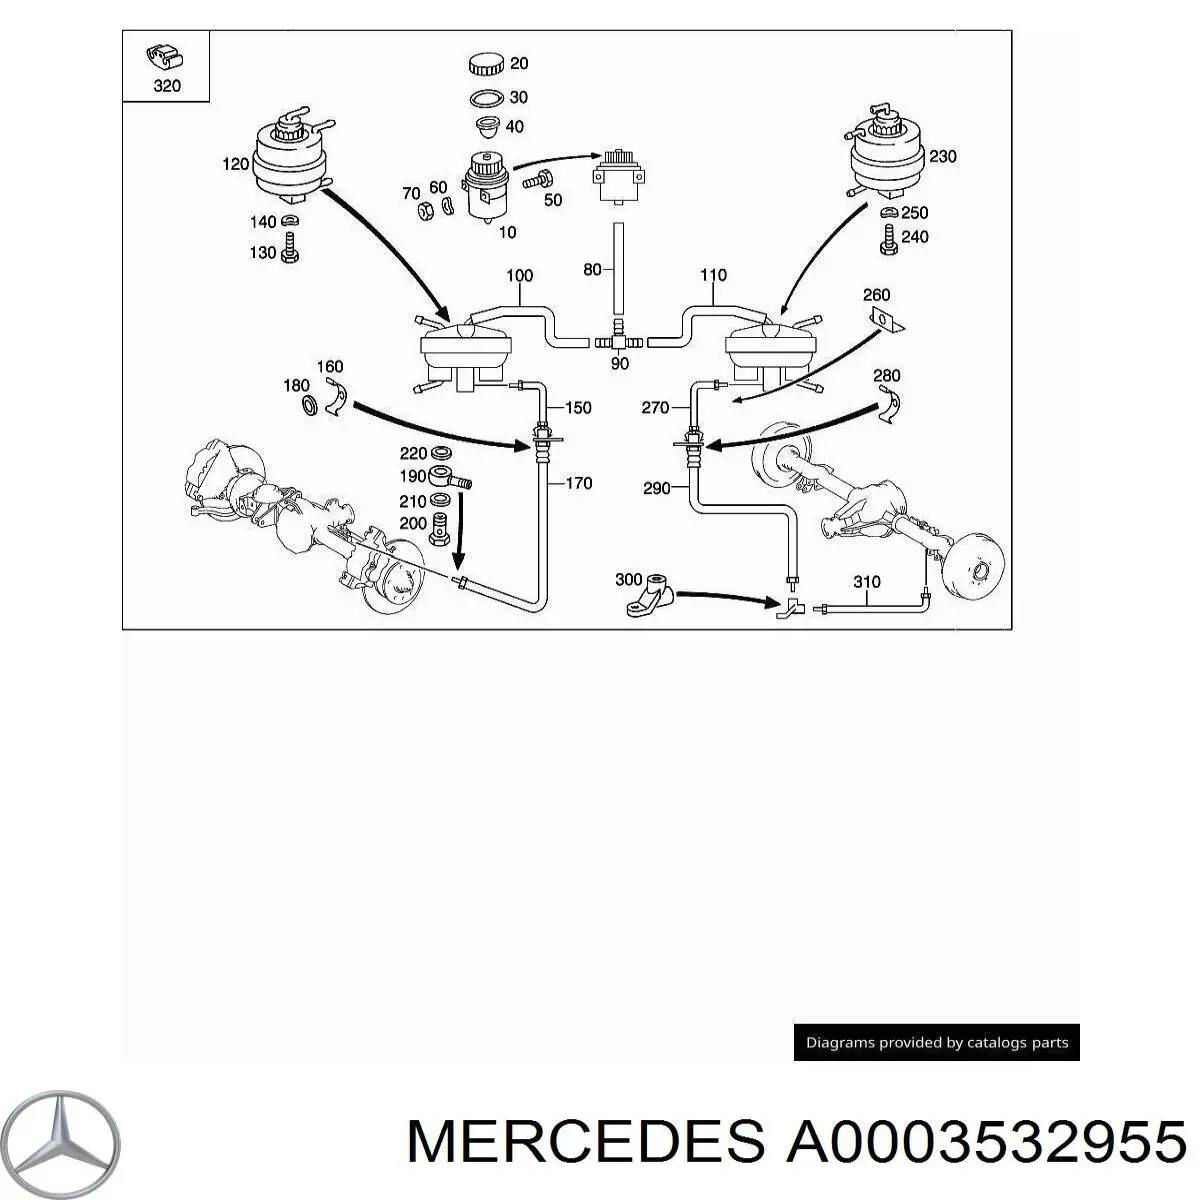 0003532955 Mercedes энергоаккумулятор привода дифференциала моста